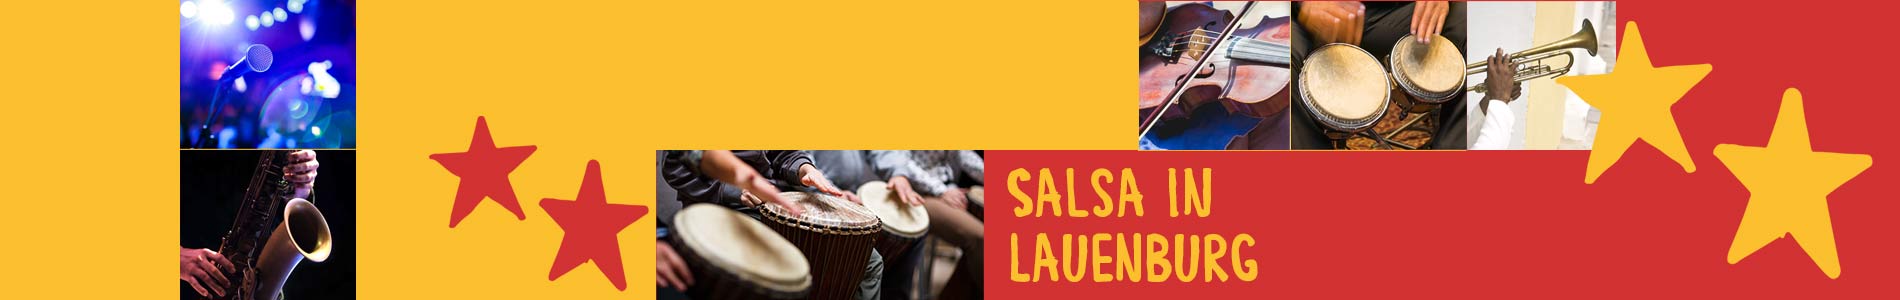 Salsa in Aue – Salsa lernen und tanzen, Tanzkurse, Partys, Veranstaltungen